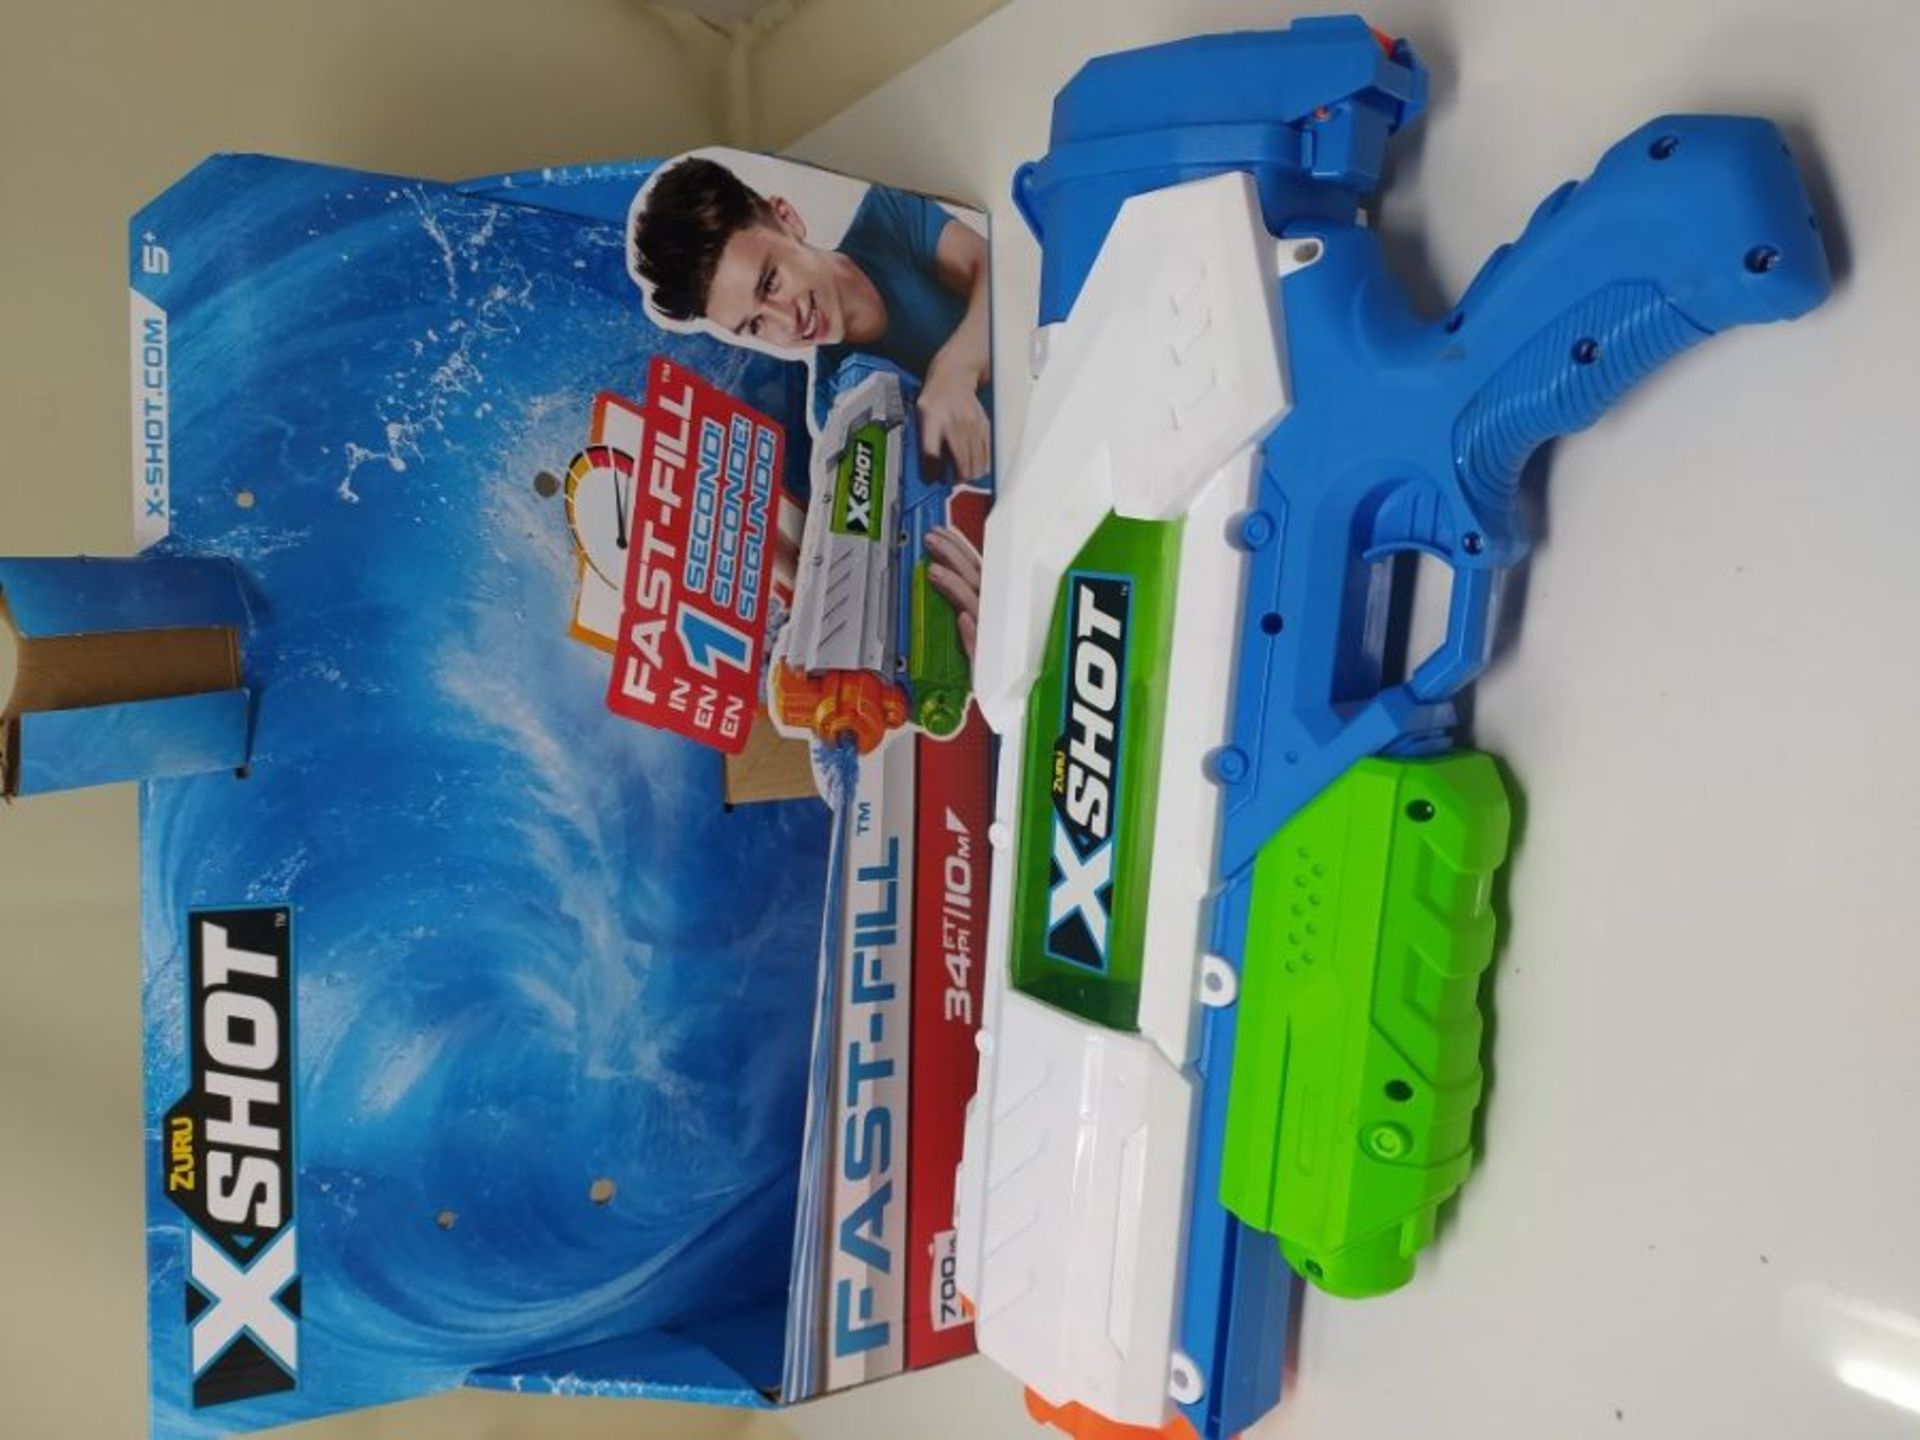 ZURU X-SHOT Warfare Fast-Fill Water Blaster, Blue